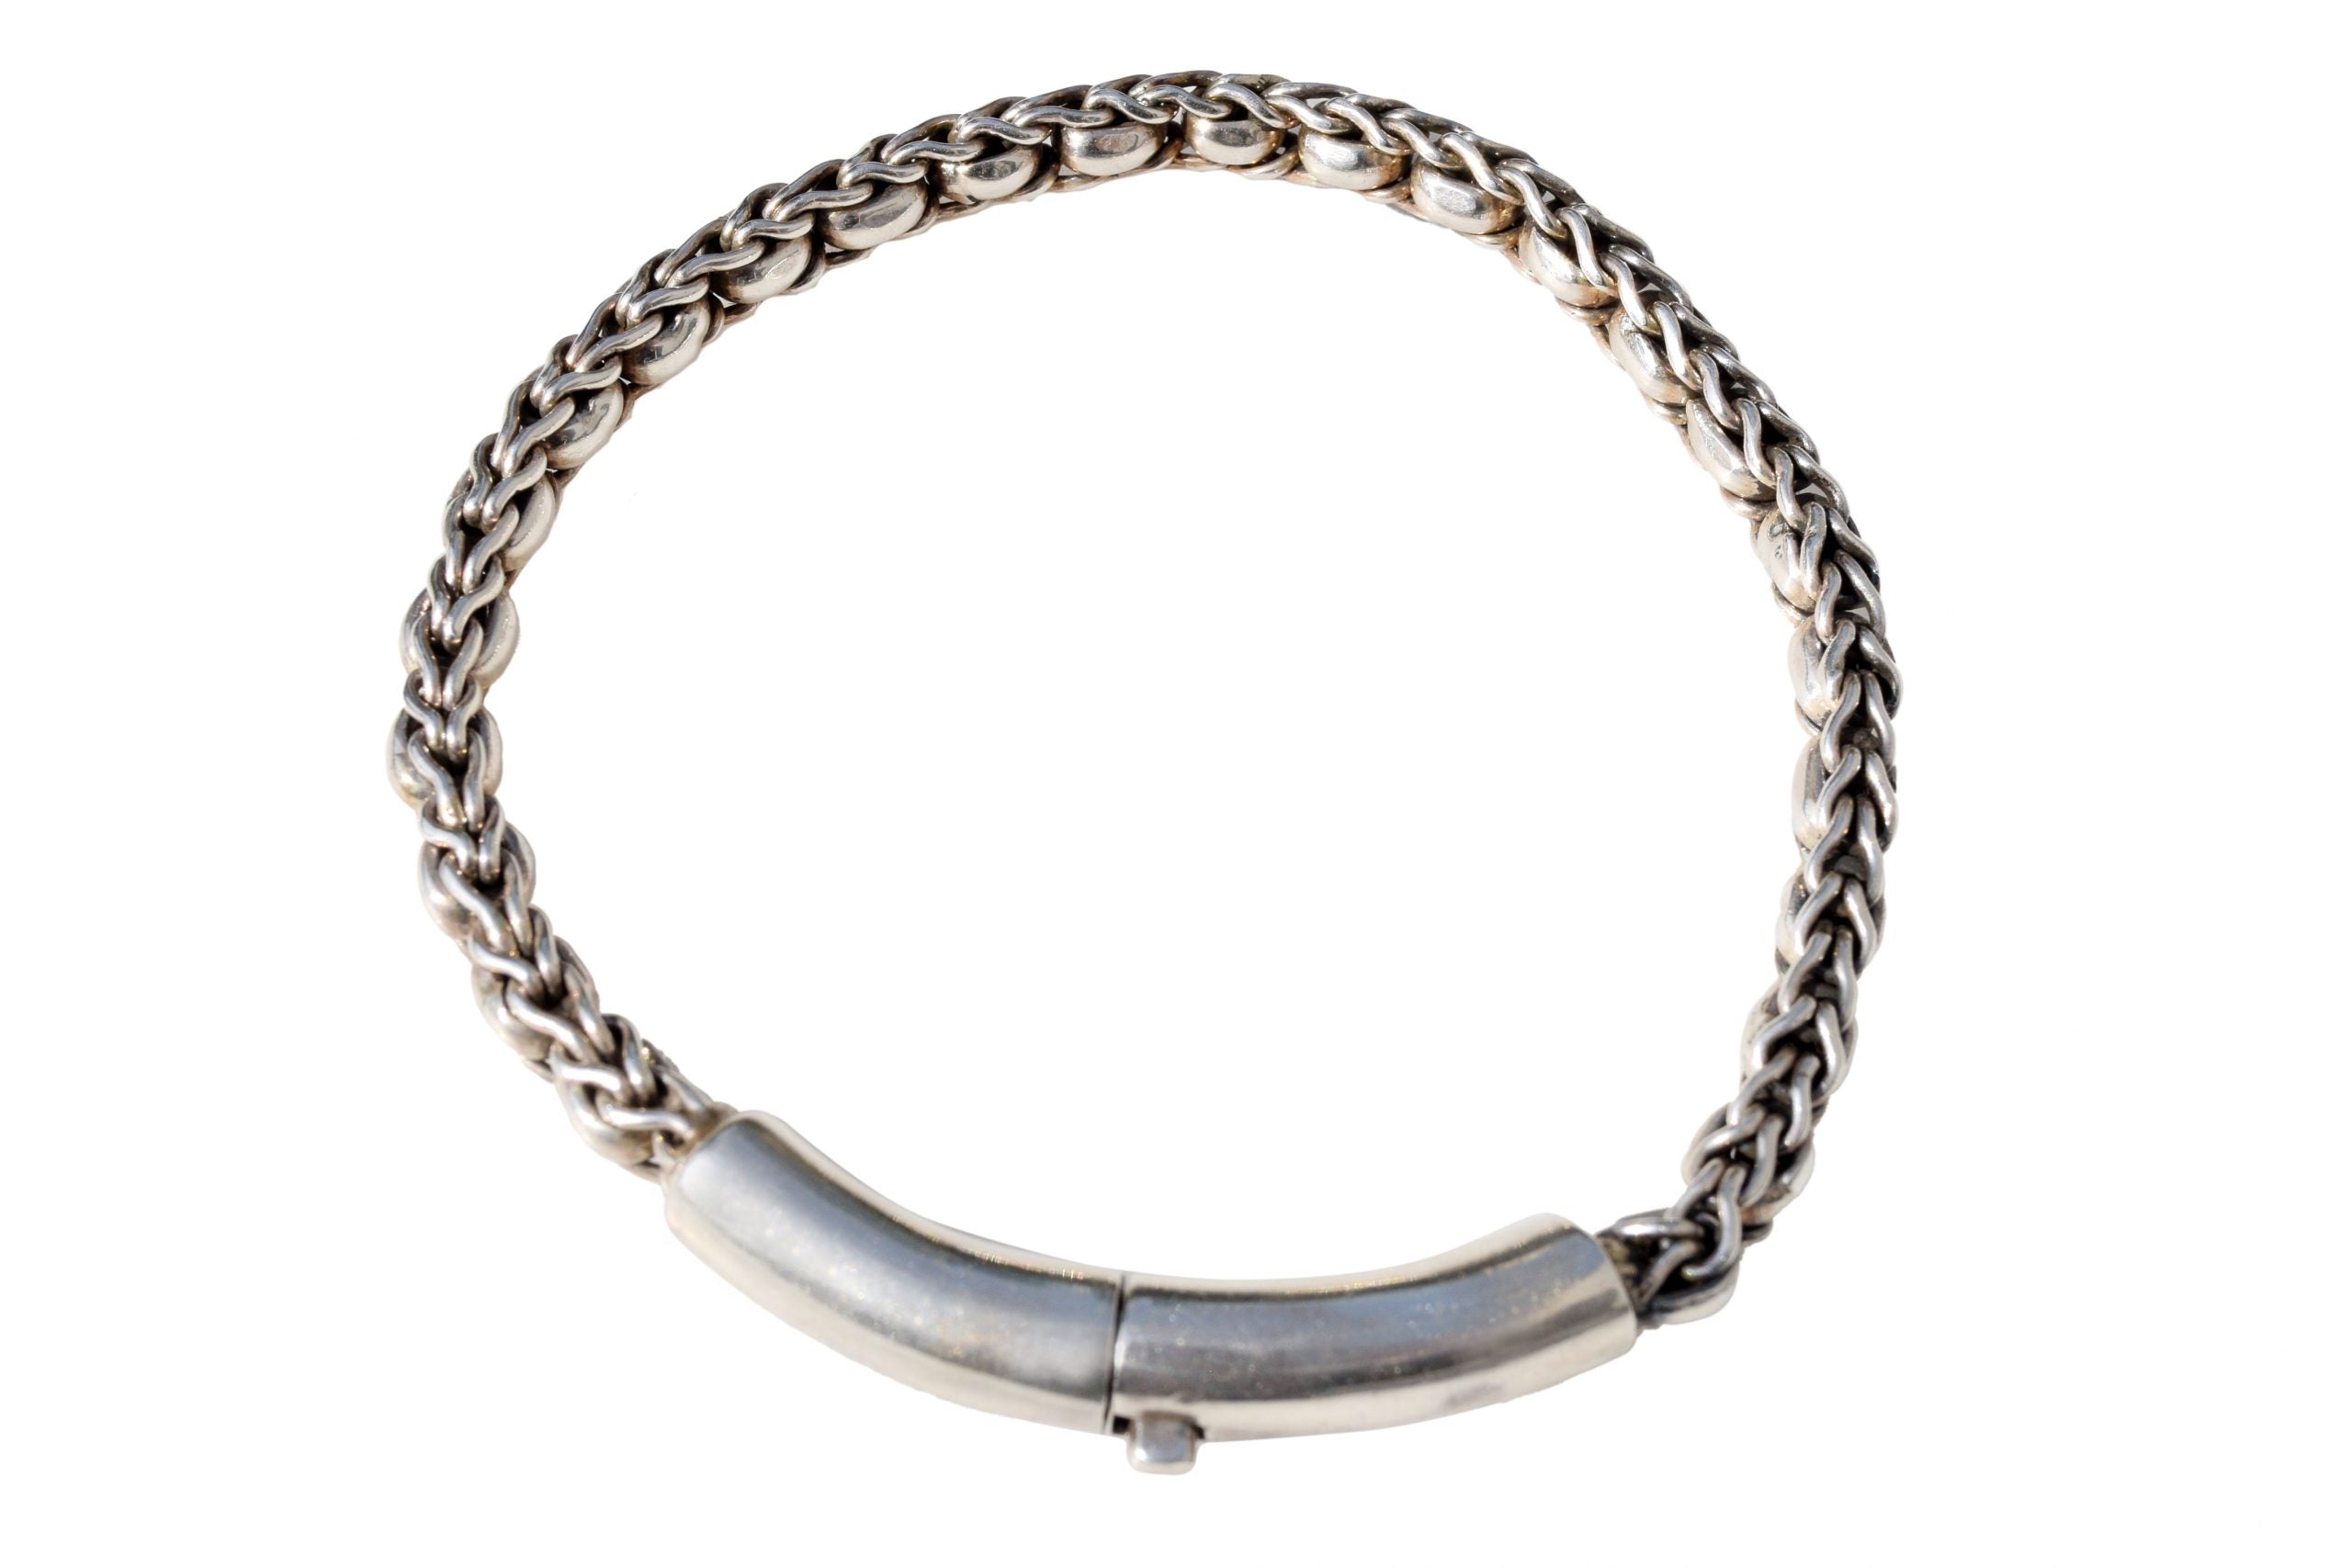 Jewellery for Men, Braided Chain Bracelet, Silver 925 Bracelet, Bracelet for men, Handmade